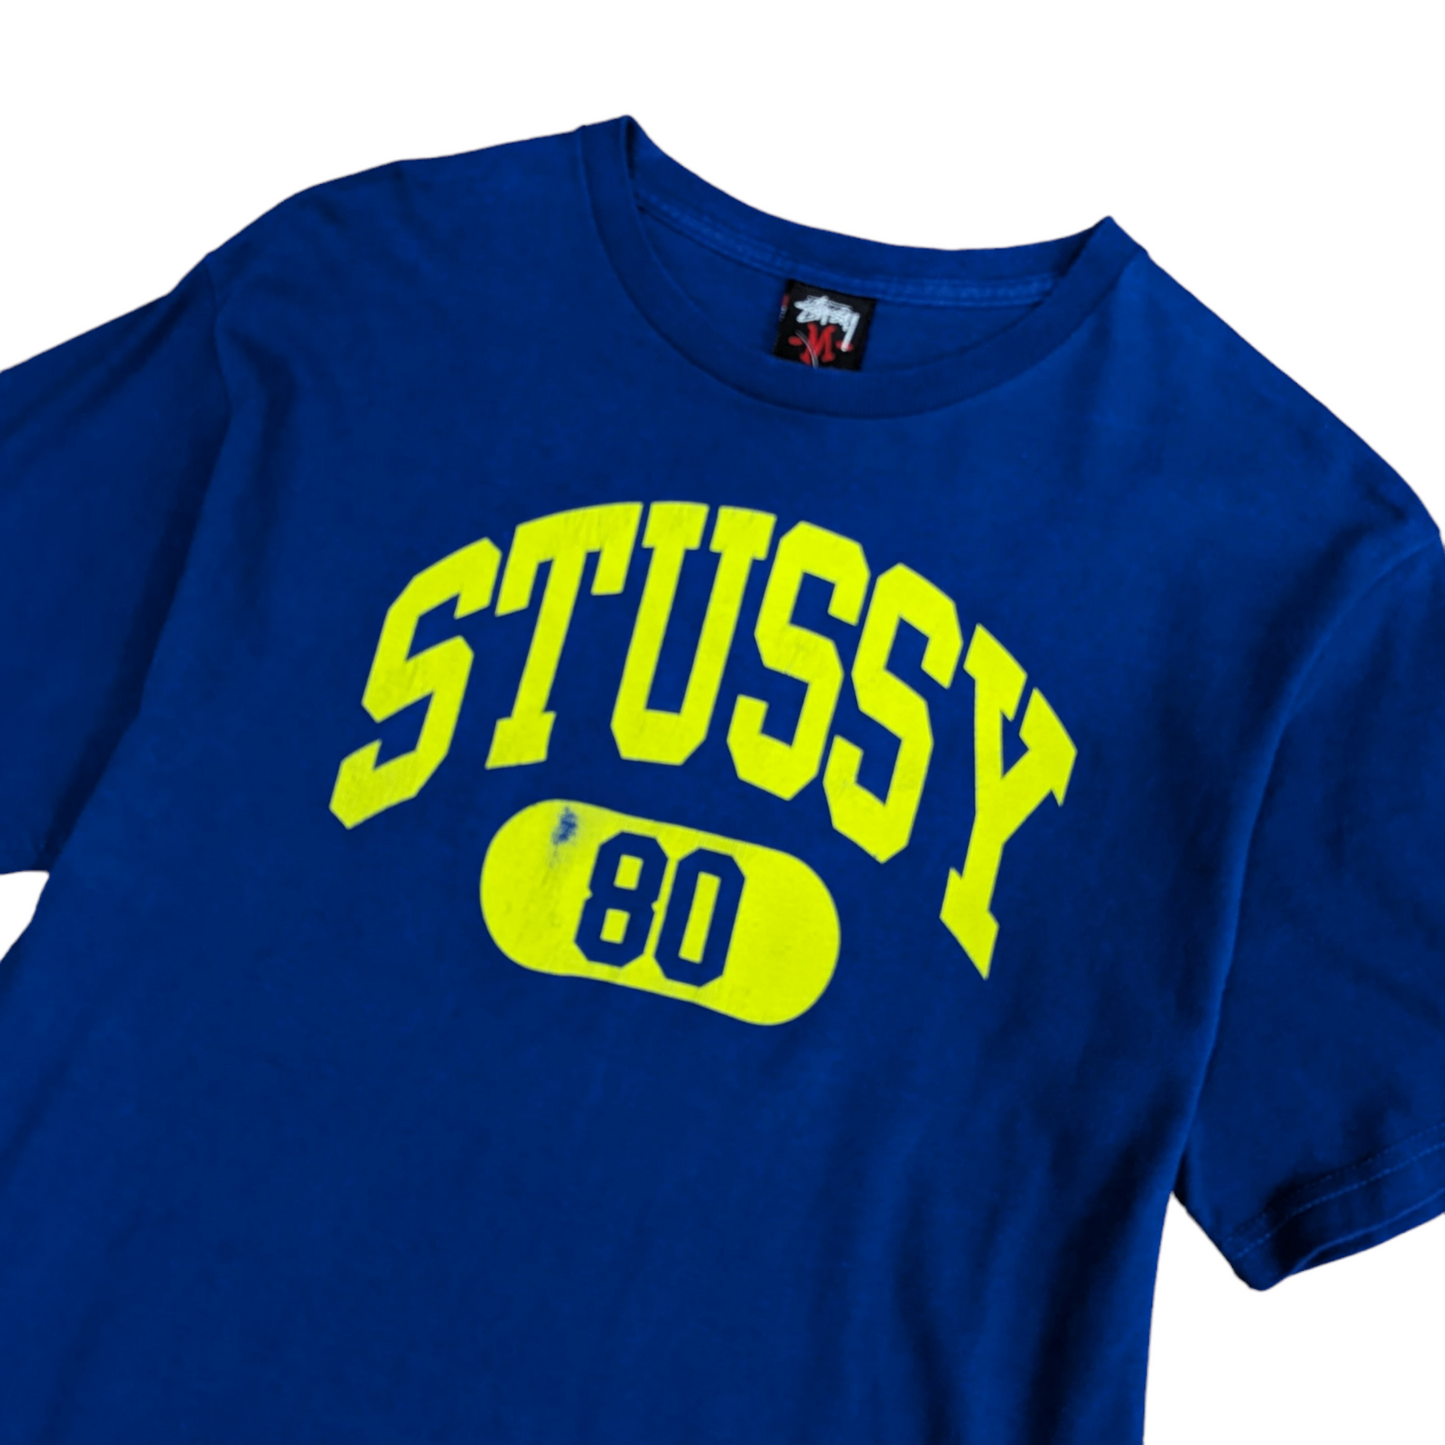 00s Stüssy T-Shirt Size S/M